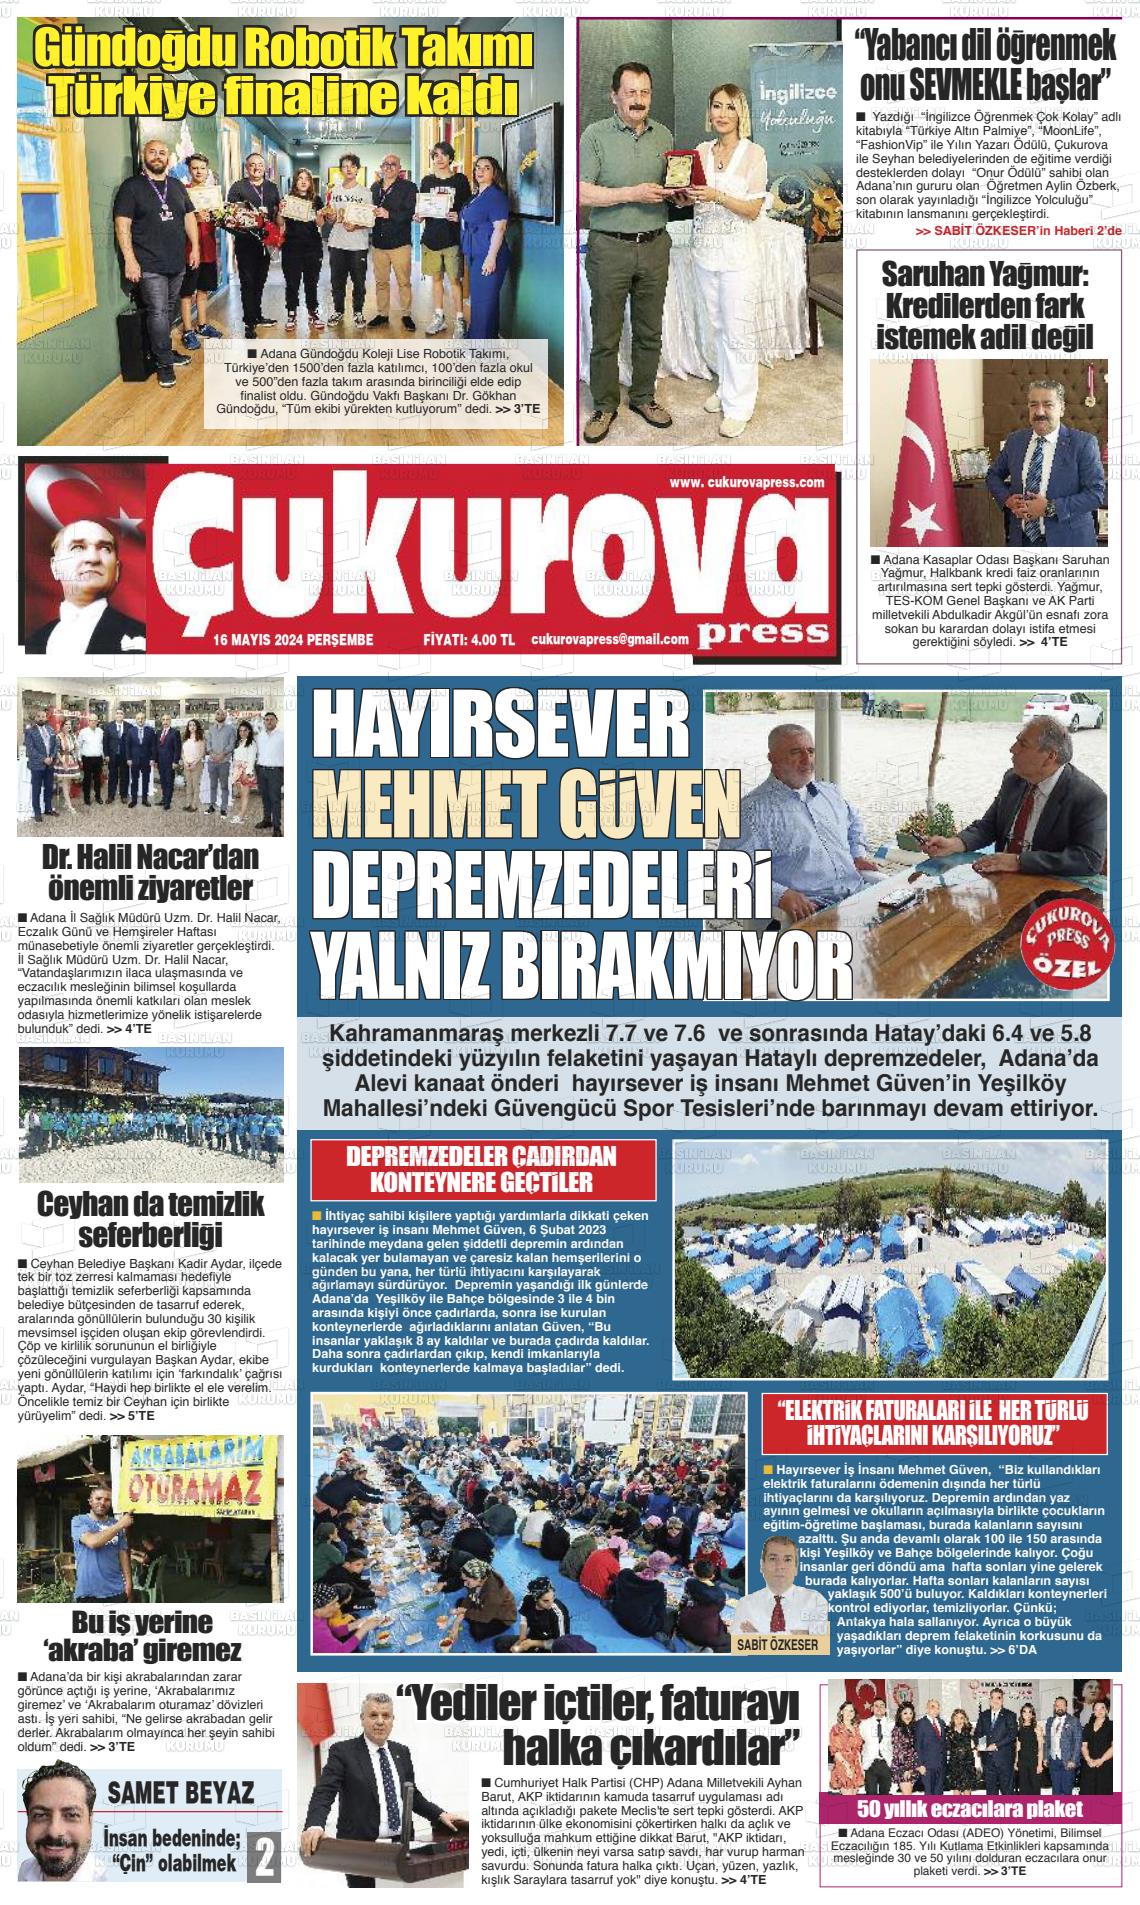 ÇUKUROVA PRESS Gazetesi